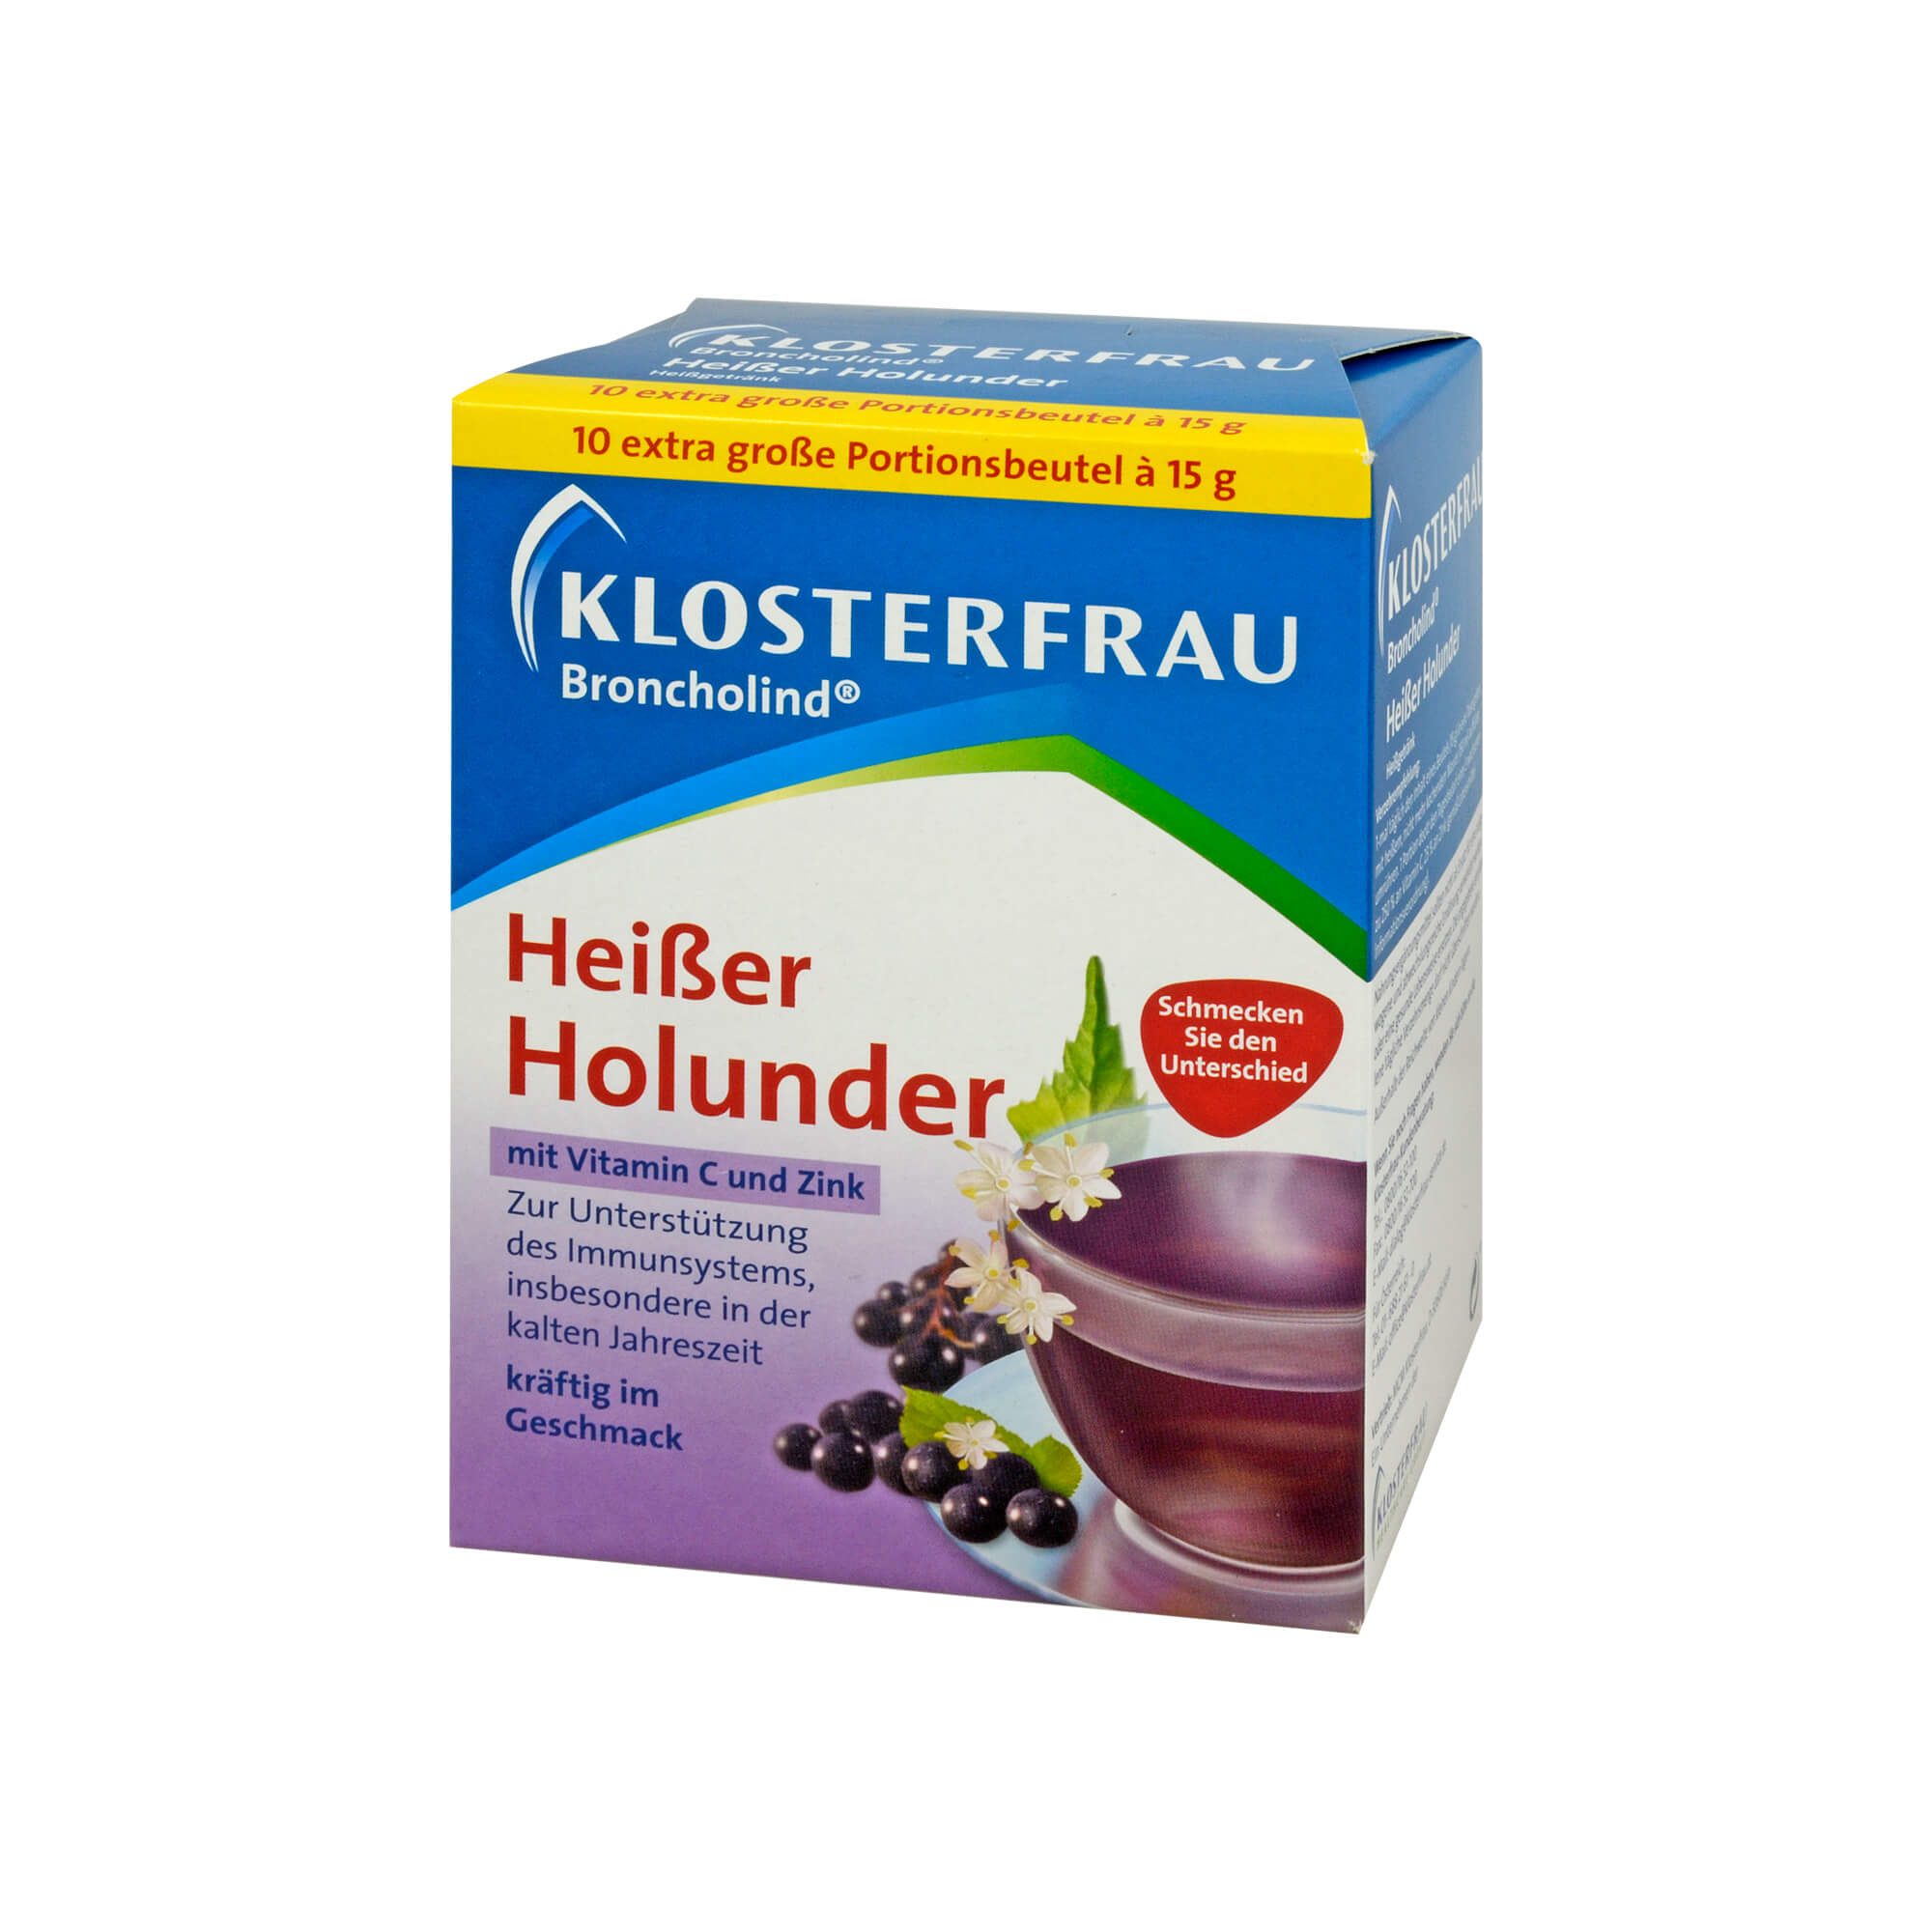 Heisser Holunder.